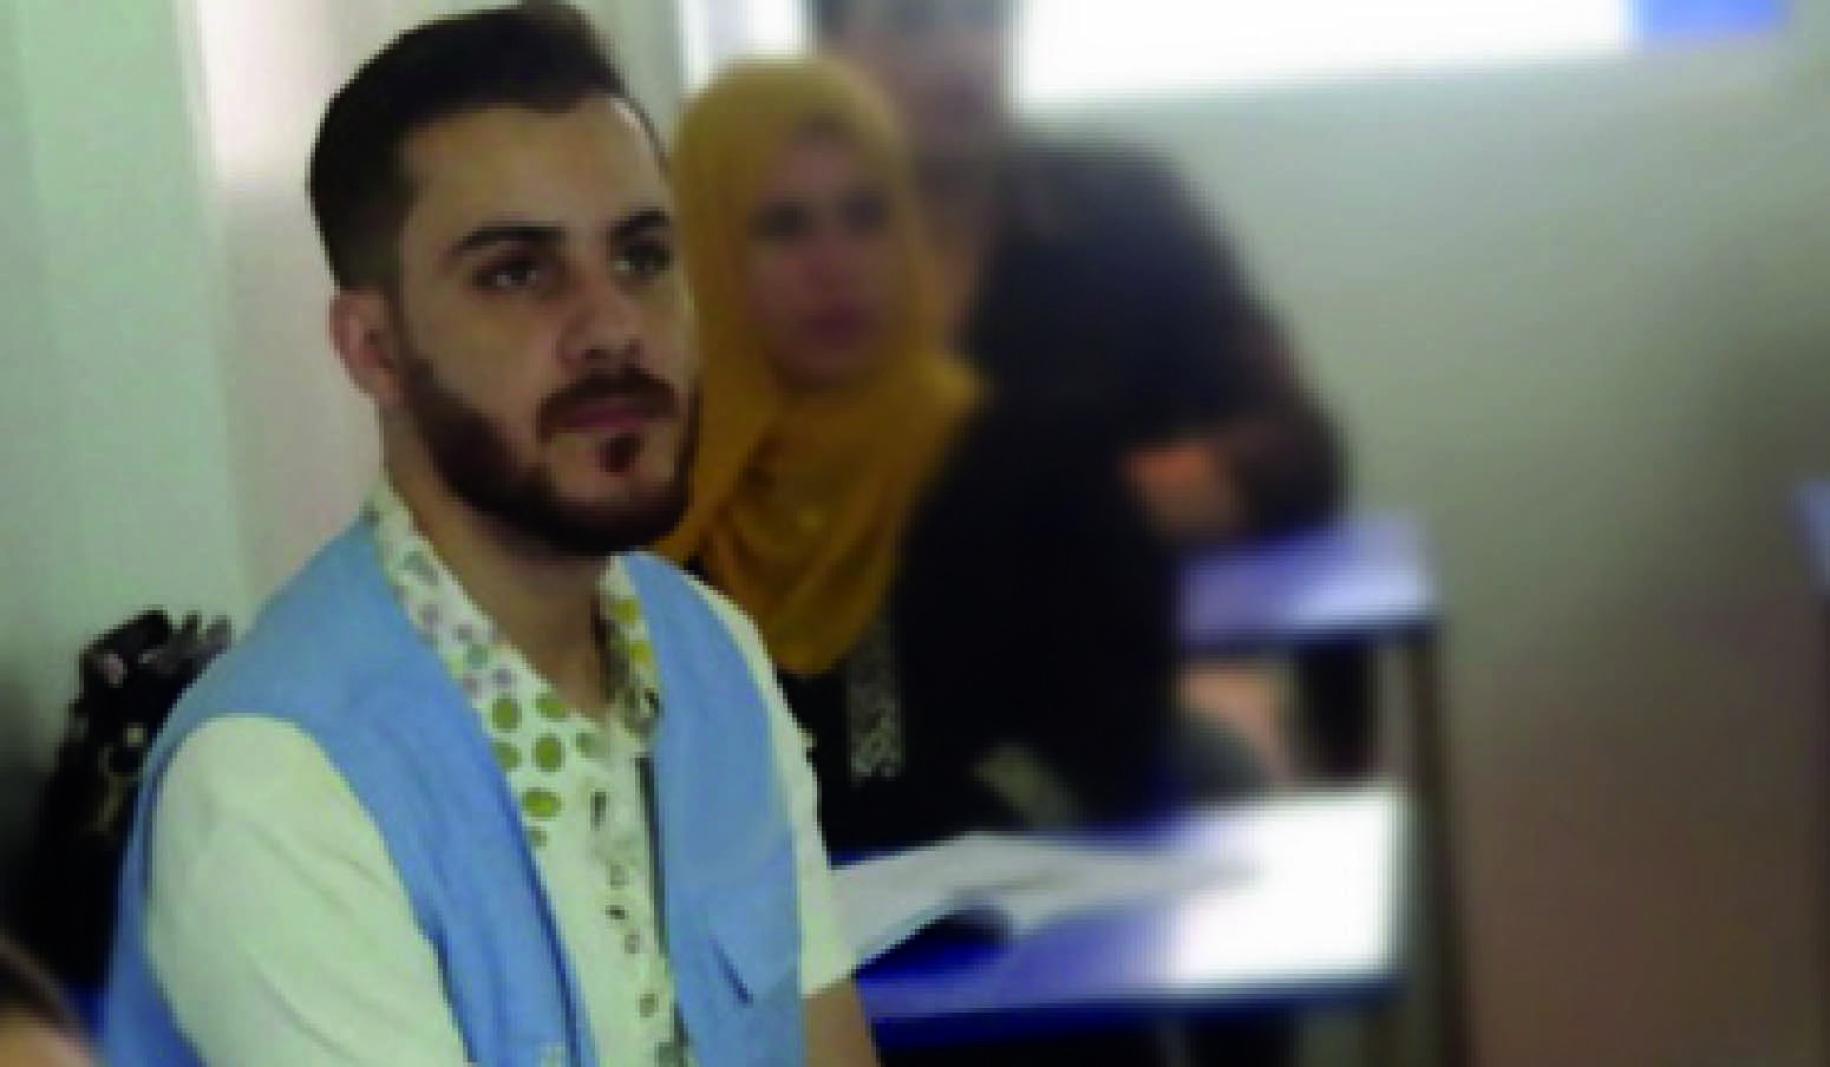 Mohammad está sentando en su puesto en un salón de clases, mientras escucha con atención a la persona que lidera la lección.